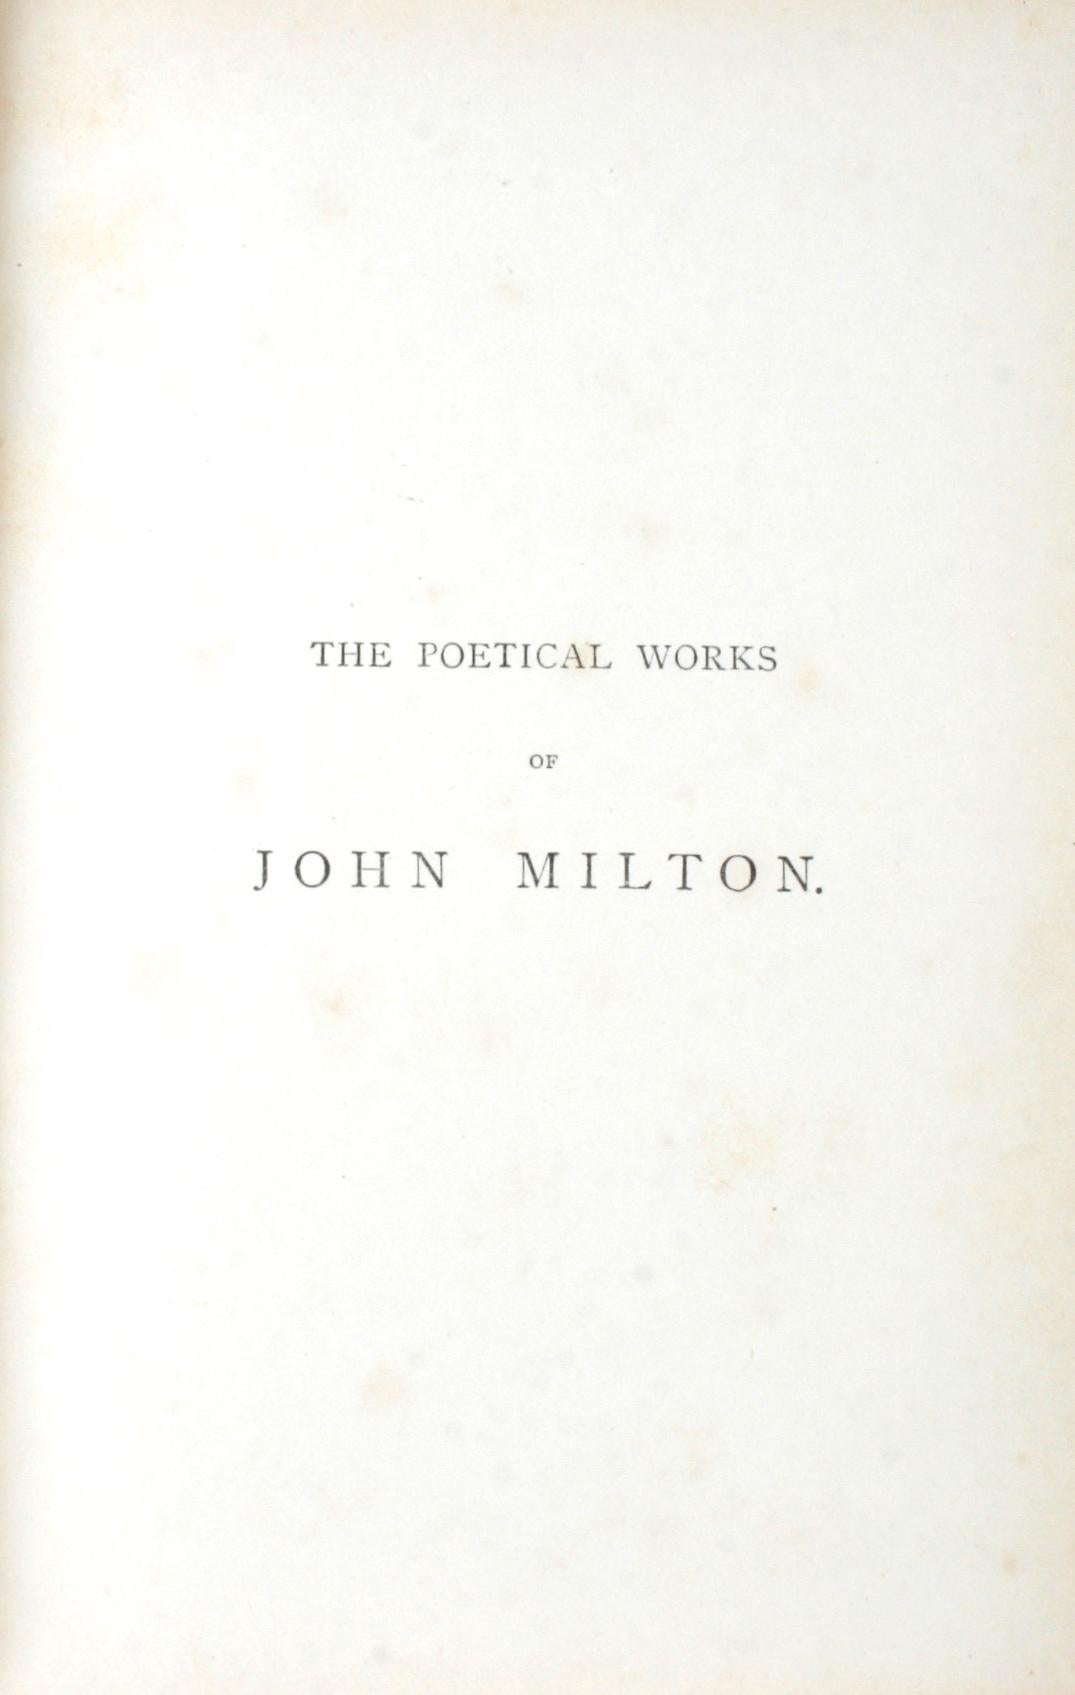 English Poetical Works of John Milton, circa 1888